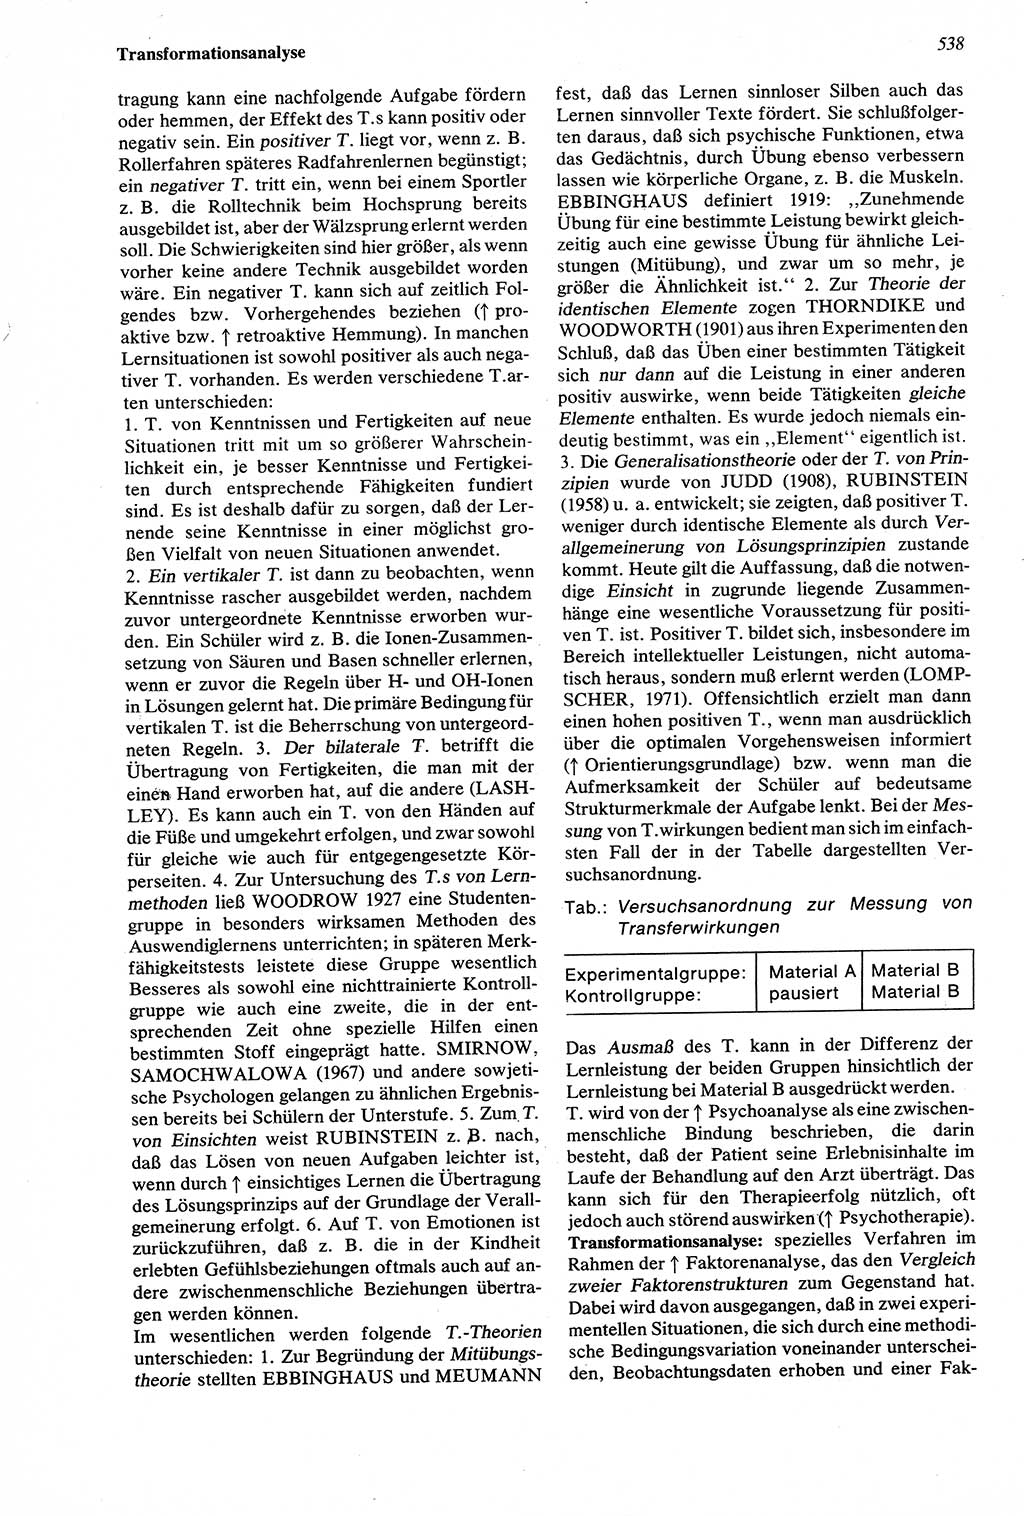 Wörterbuch der Psychologie [Deutsche Demokratische Republik (DDR)] 1976, Seite 538 (Wb. Psych. DDR 1976, S. 538)